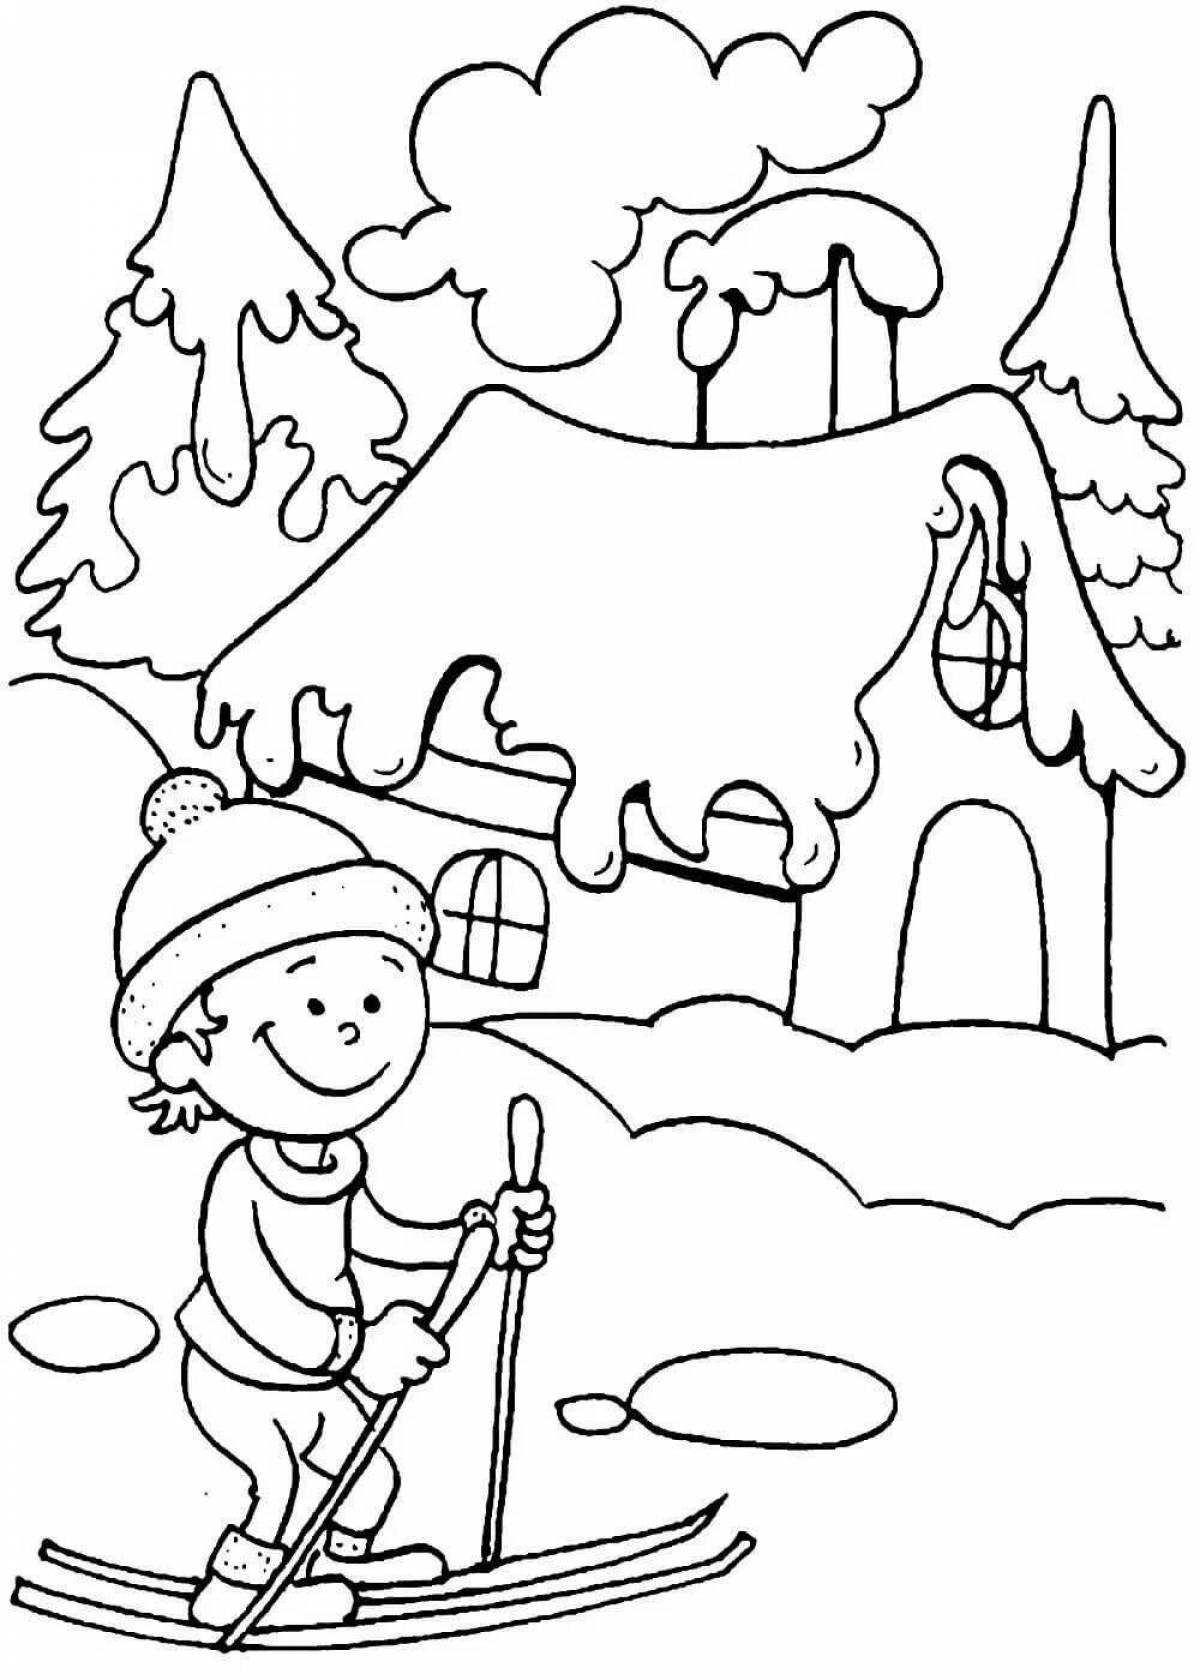 Winter coloring for schoolchildren